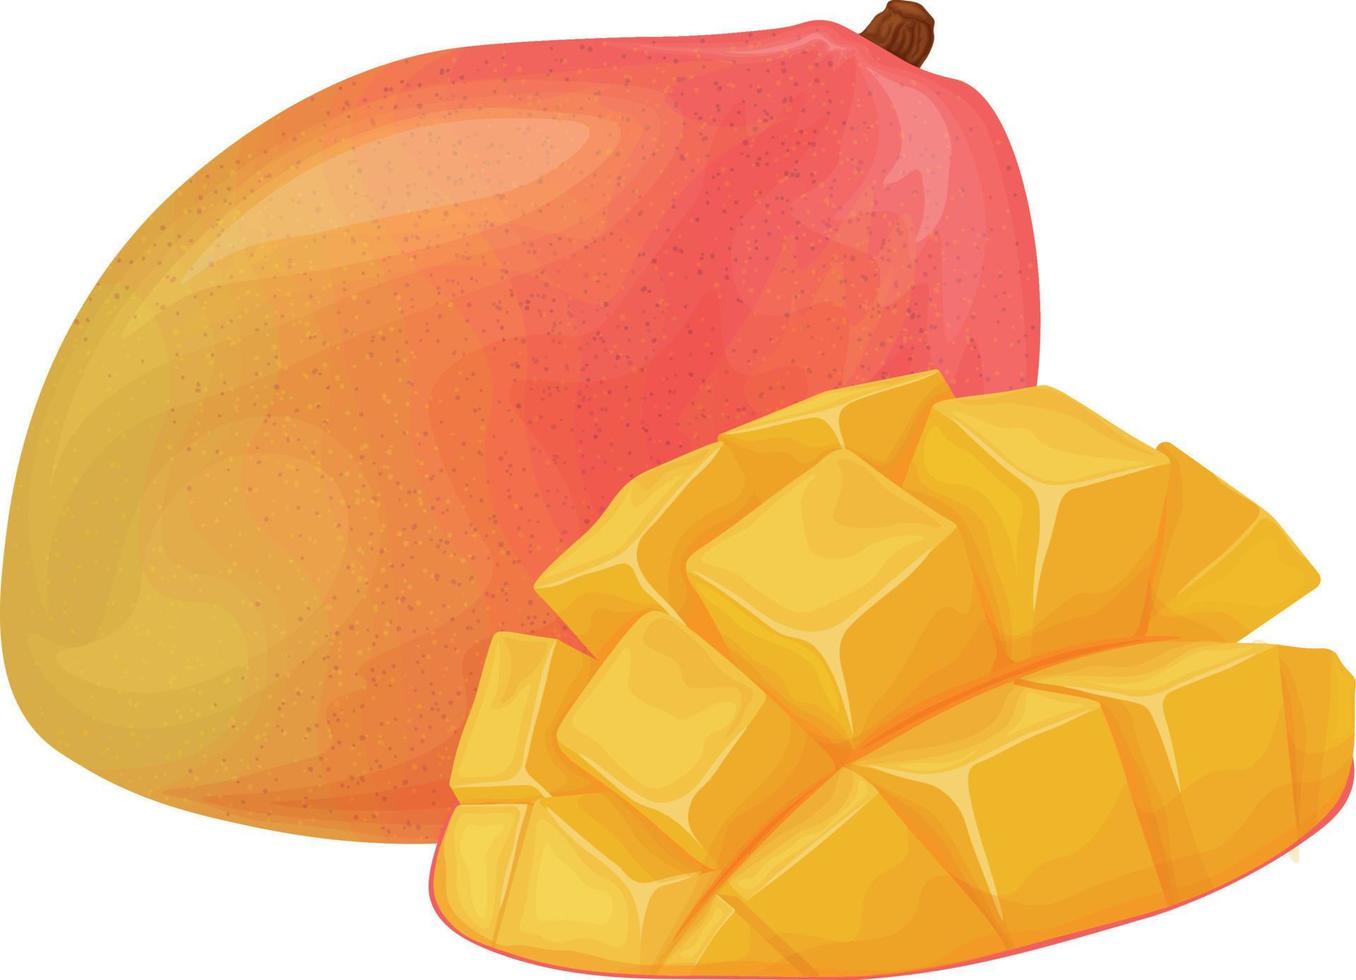 mango. mango maduro. fruta tropical. producto vegetariano vitamínico. ilustración vectorial aislada en un fondo blanco vector